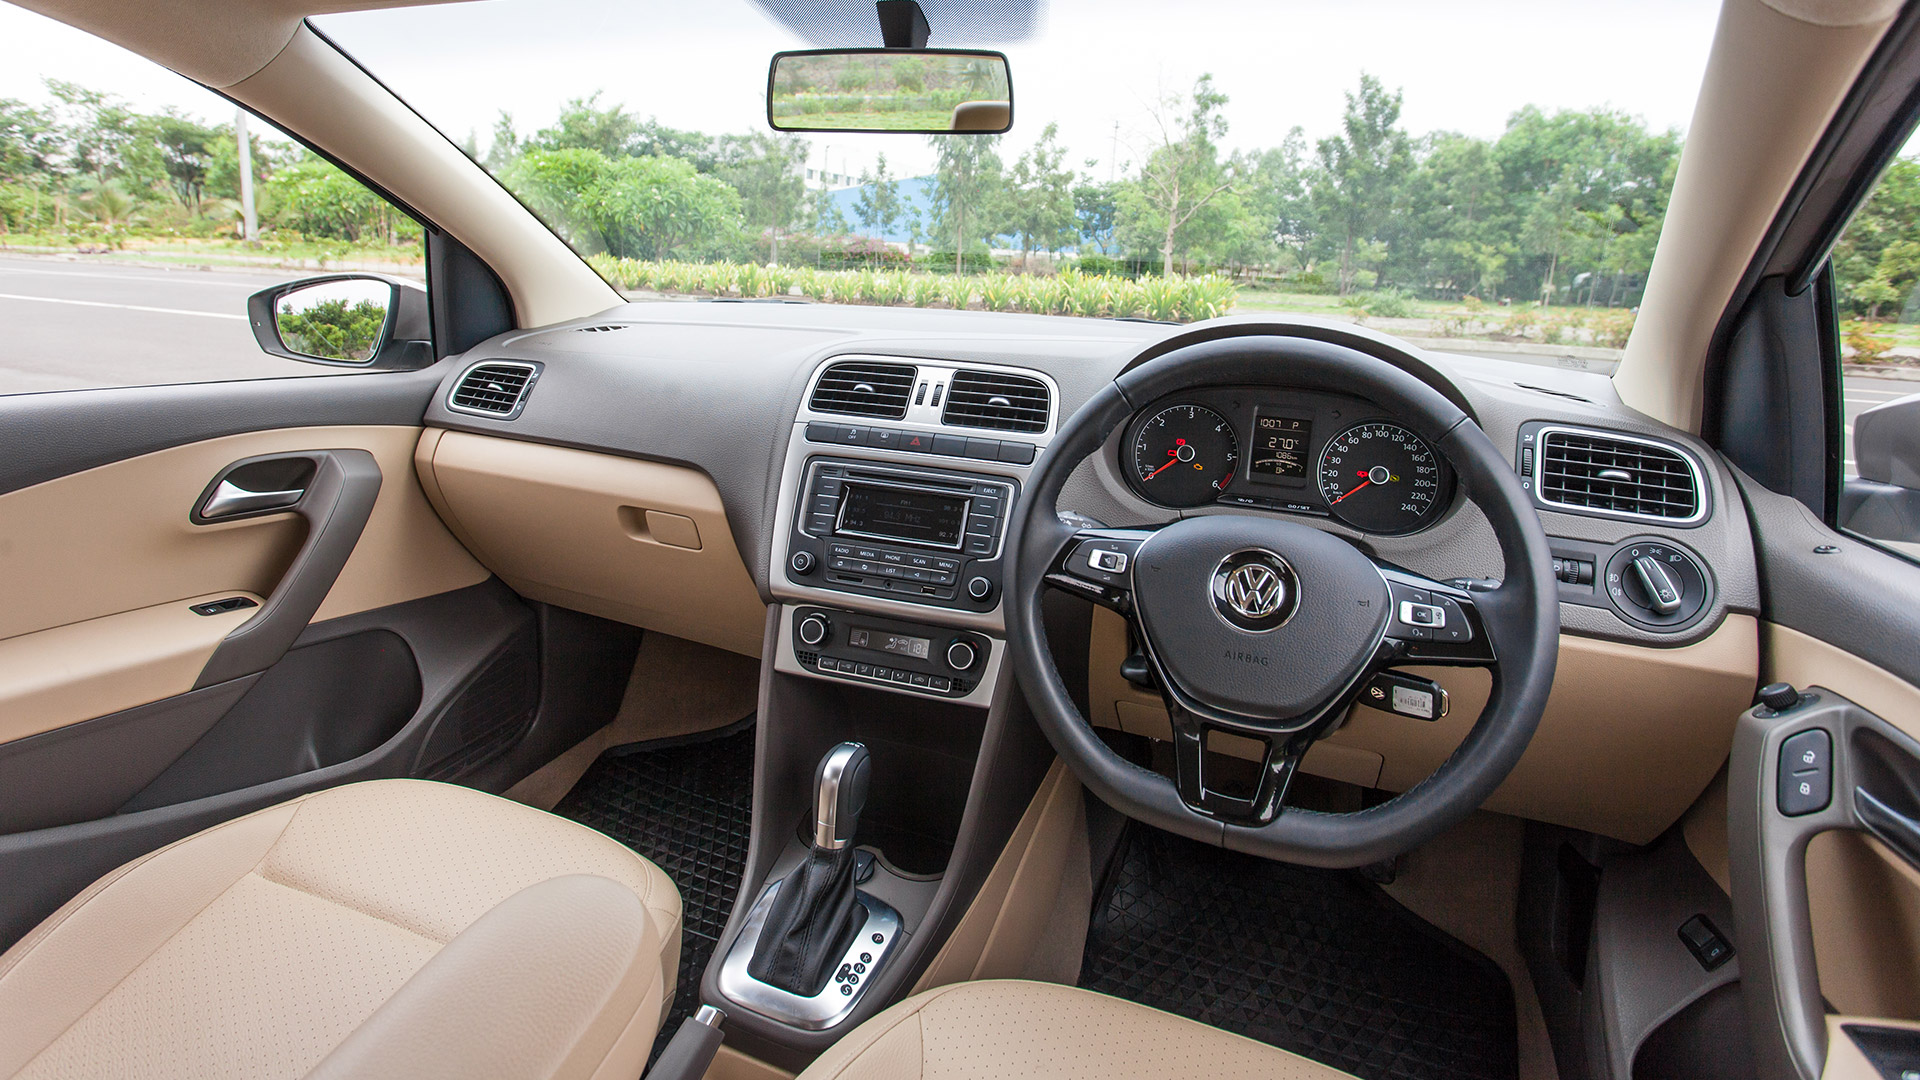 Volkswagen Vento 2015 Interior Car Photos Overdrive